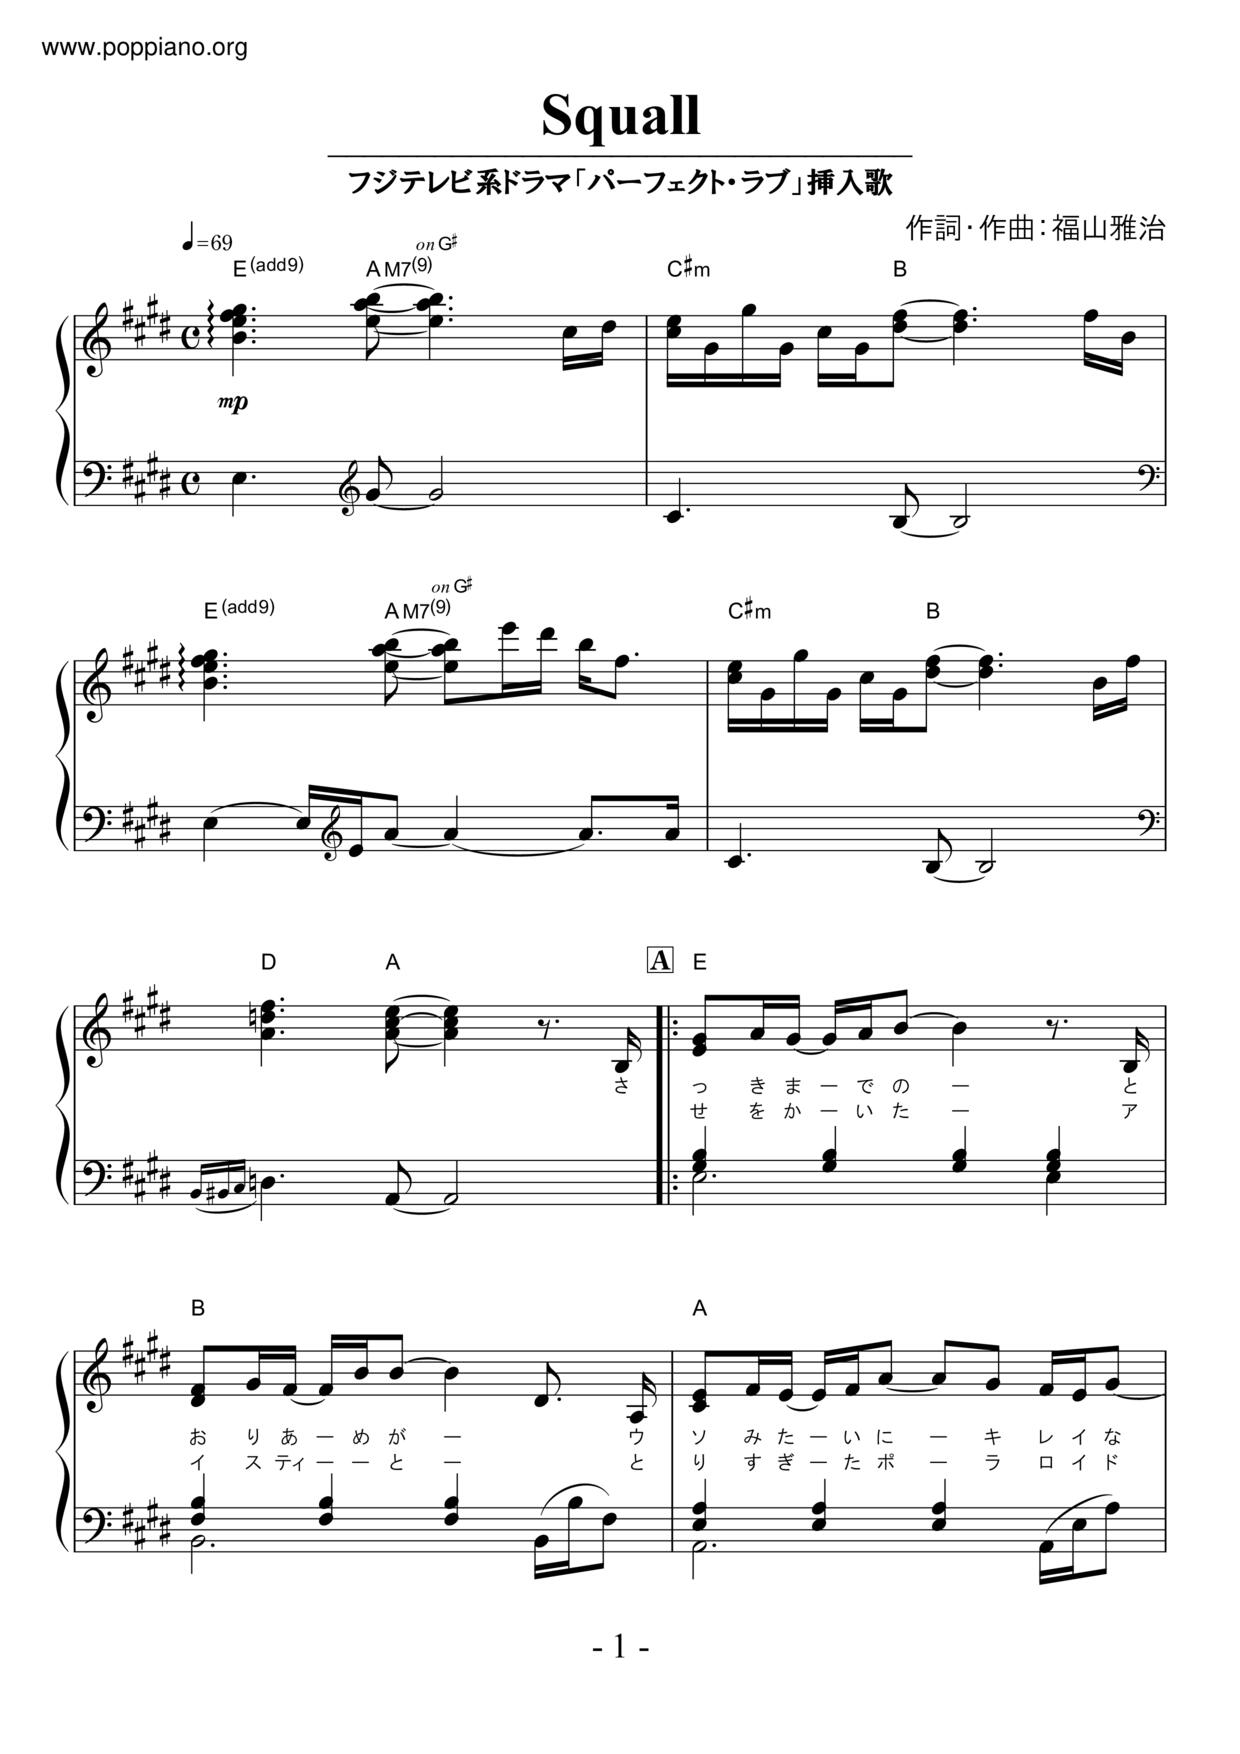 ☆松本英子 - Squall ピアノ譜pdf- 香港ポップピアノ協会 無料PDF楽譜